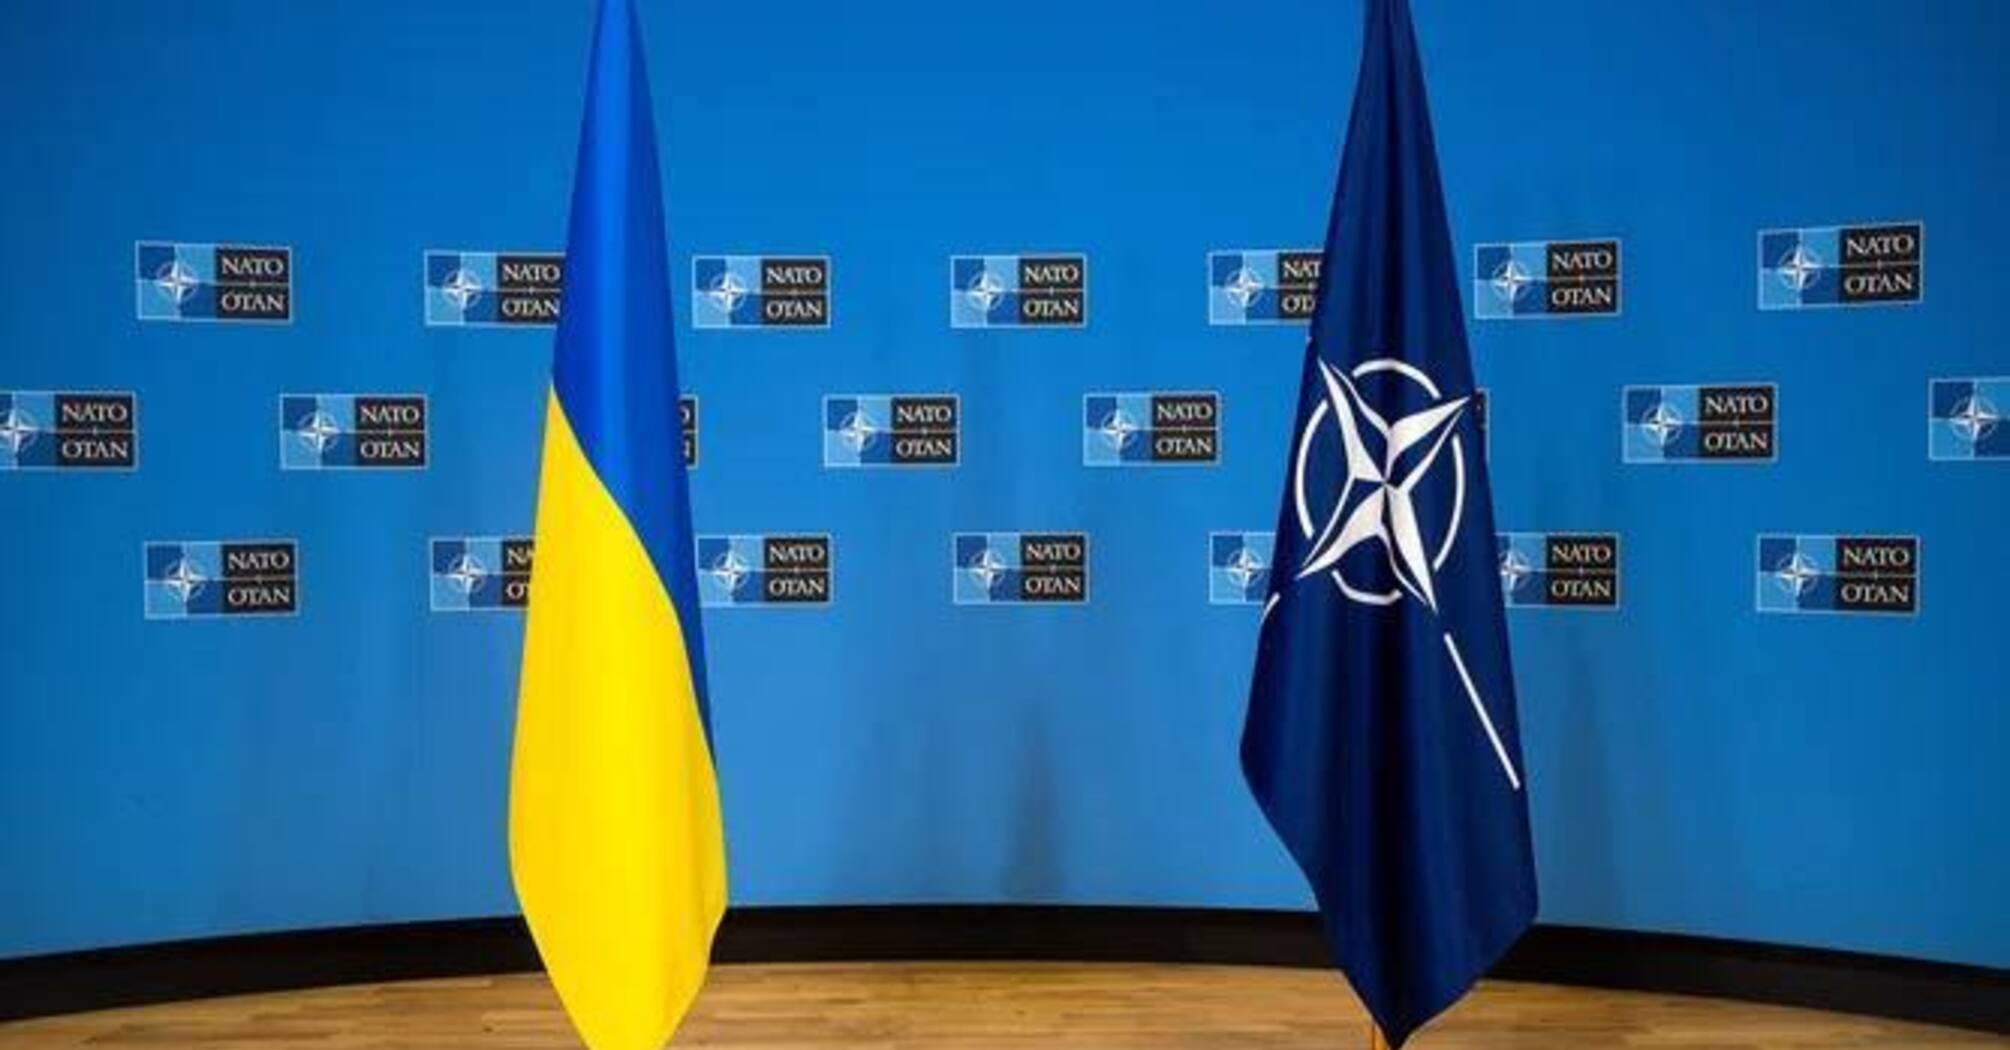 НАТО готує план повного переведення української армії з пострадянського озброєння на зброю альянсу, - Єнс Столтенберг